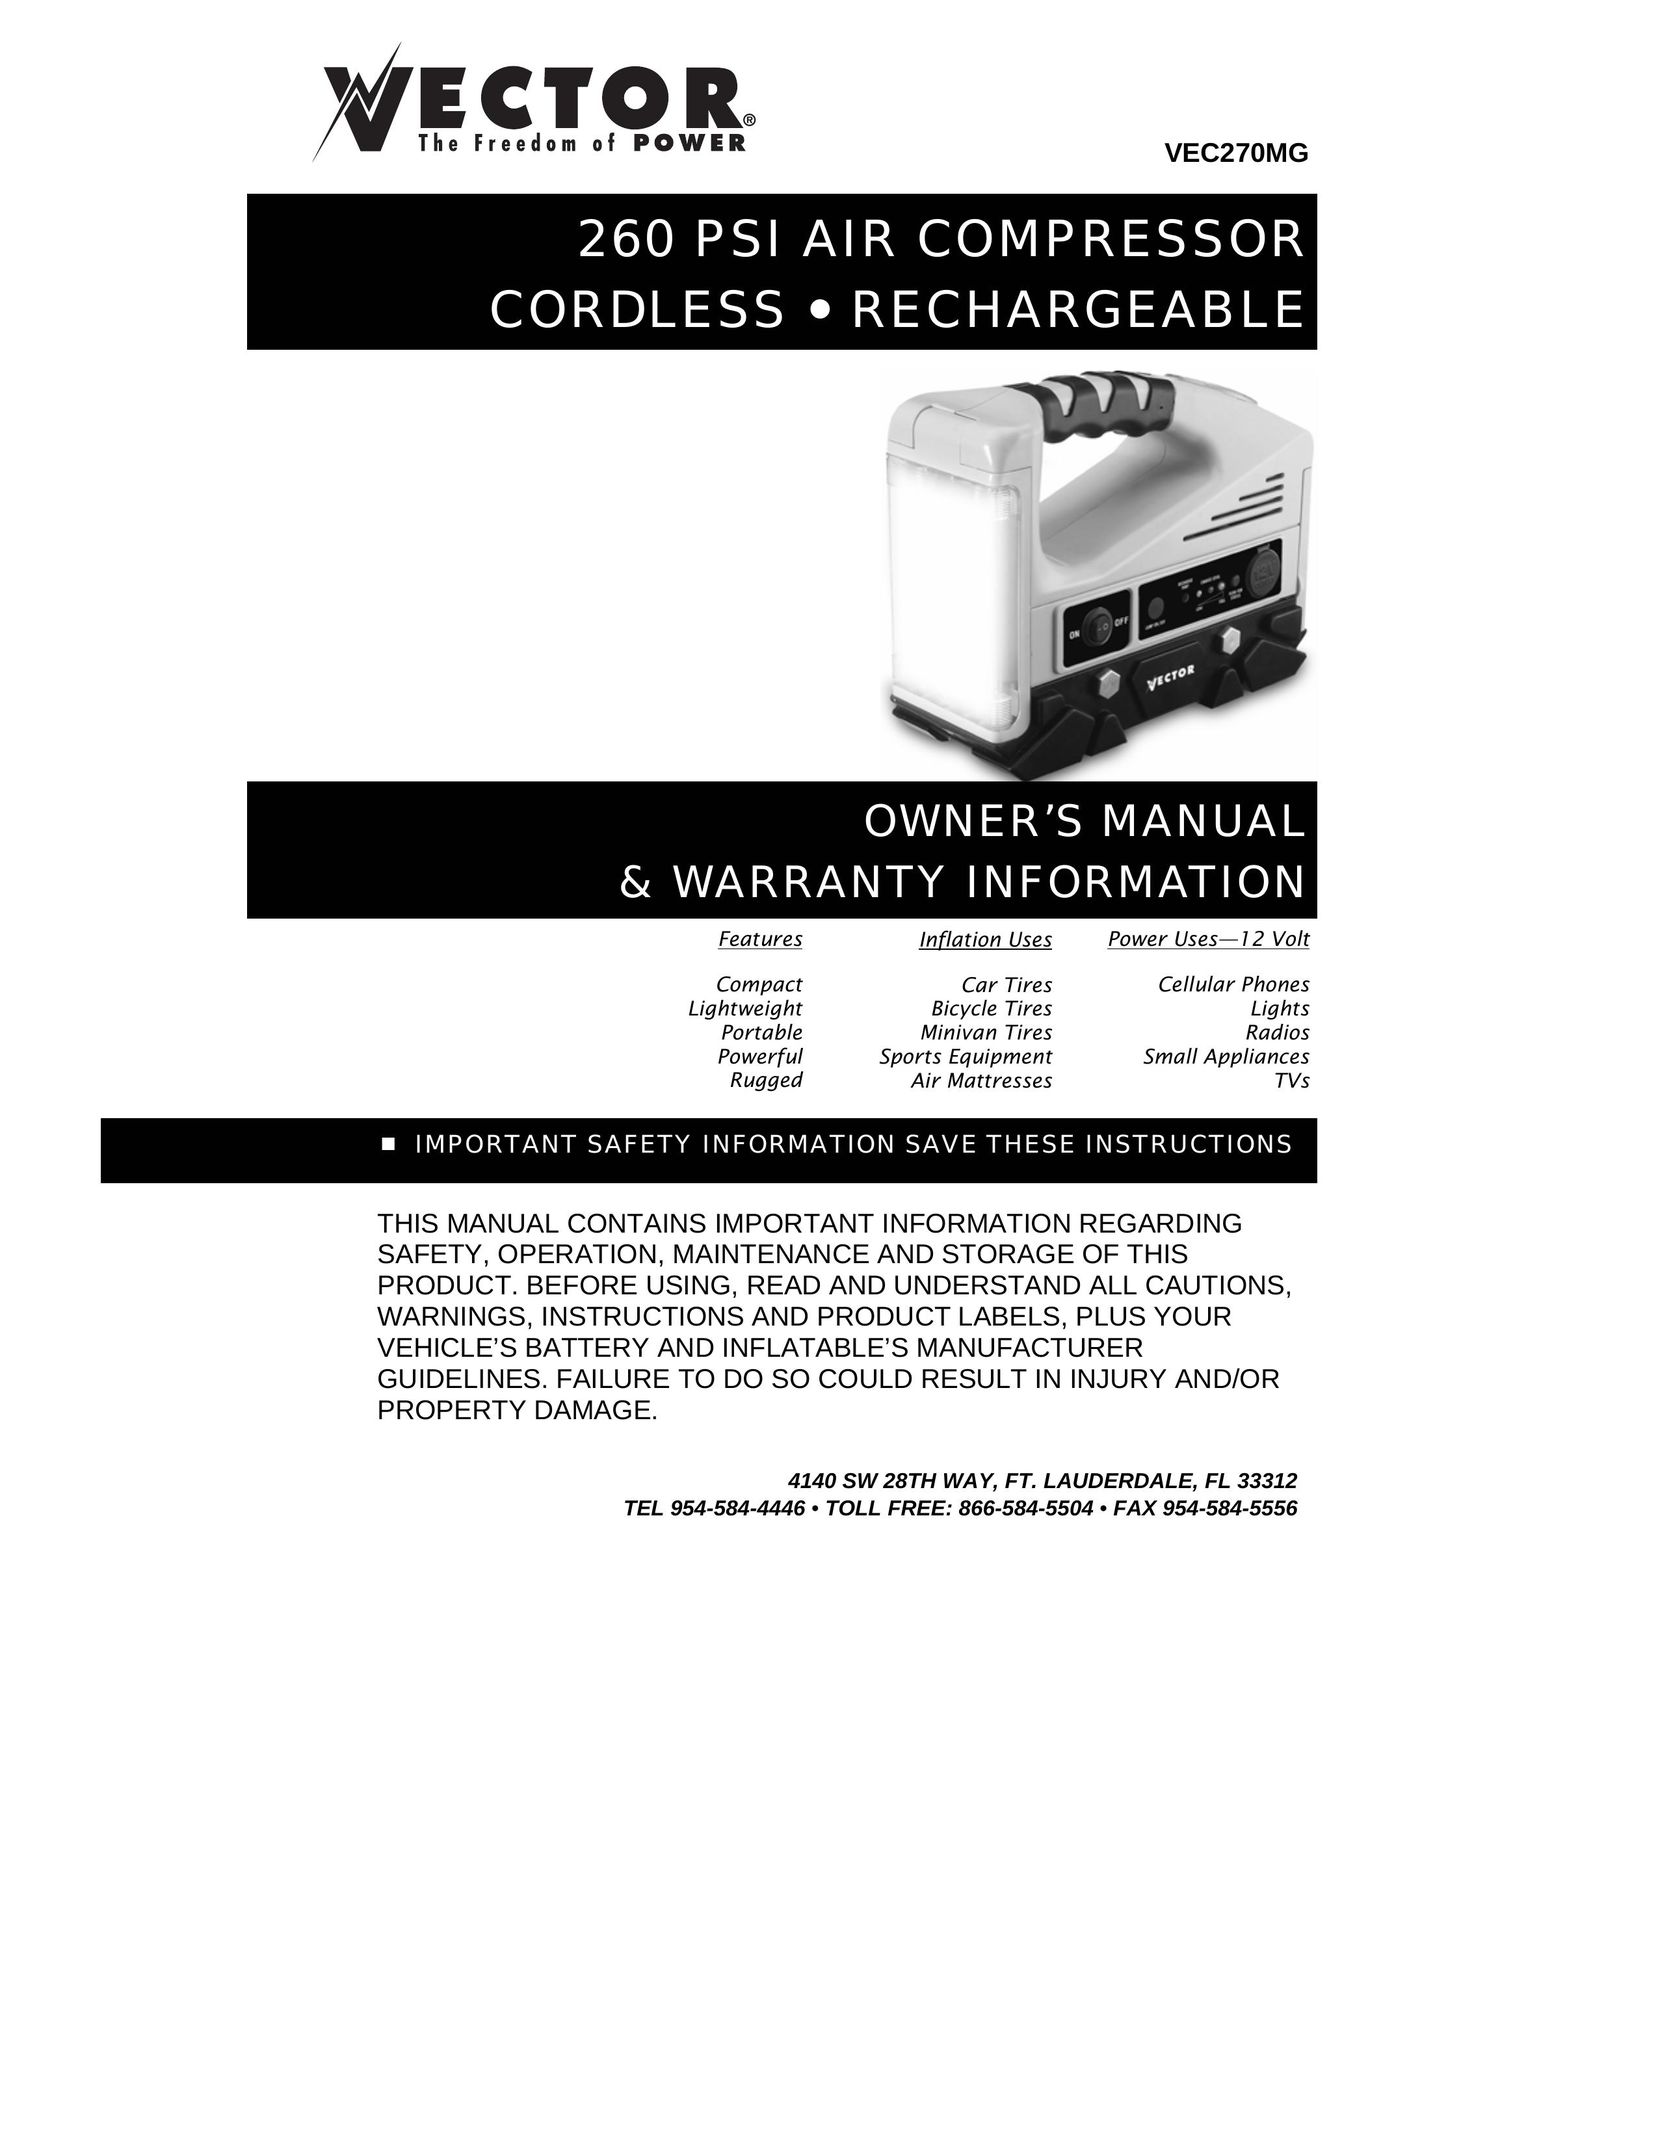 Vector VEC270MG Air Compressor User Manual